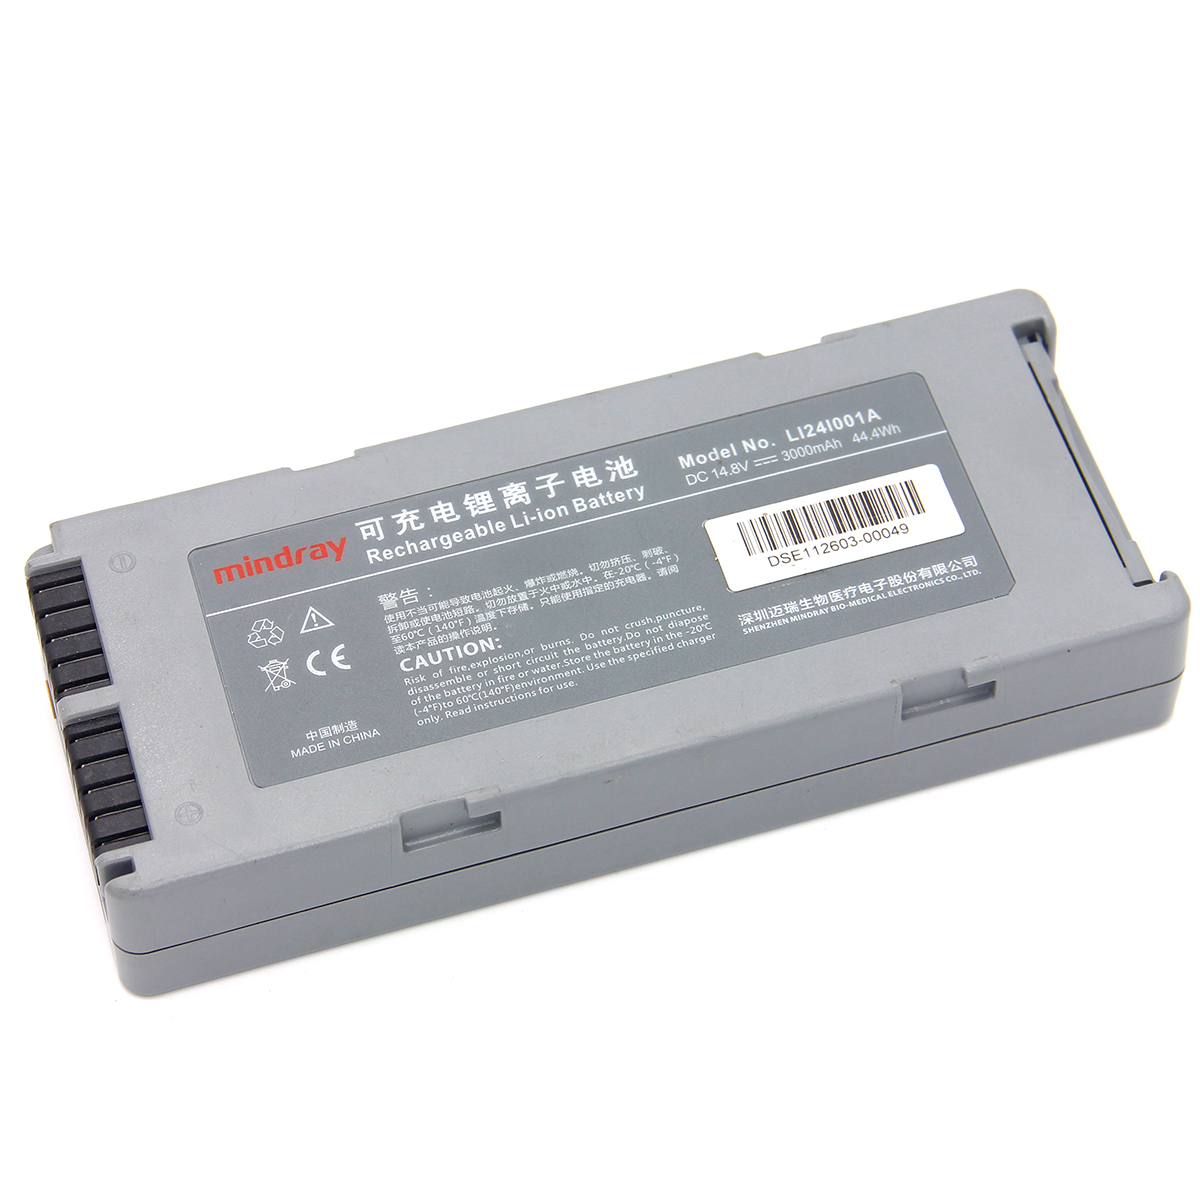 Original Mindray defibrillator D2 D3 D5 D6 LI24I001A LI24I005A battery [Battery model] LI24I001A LI24I005A [Product - Click Image to Close